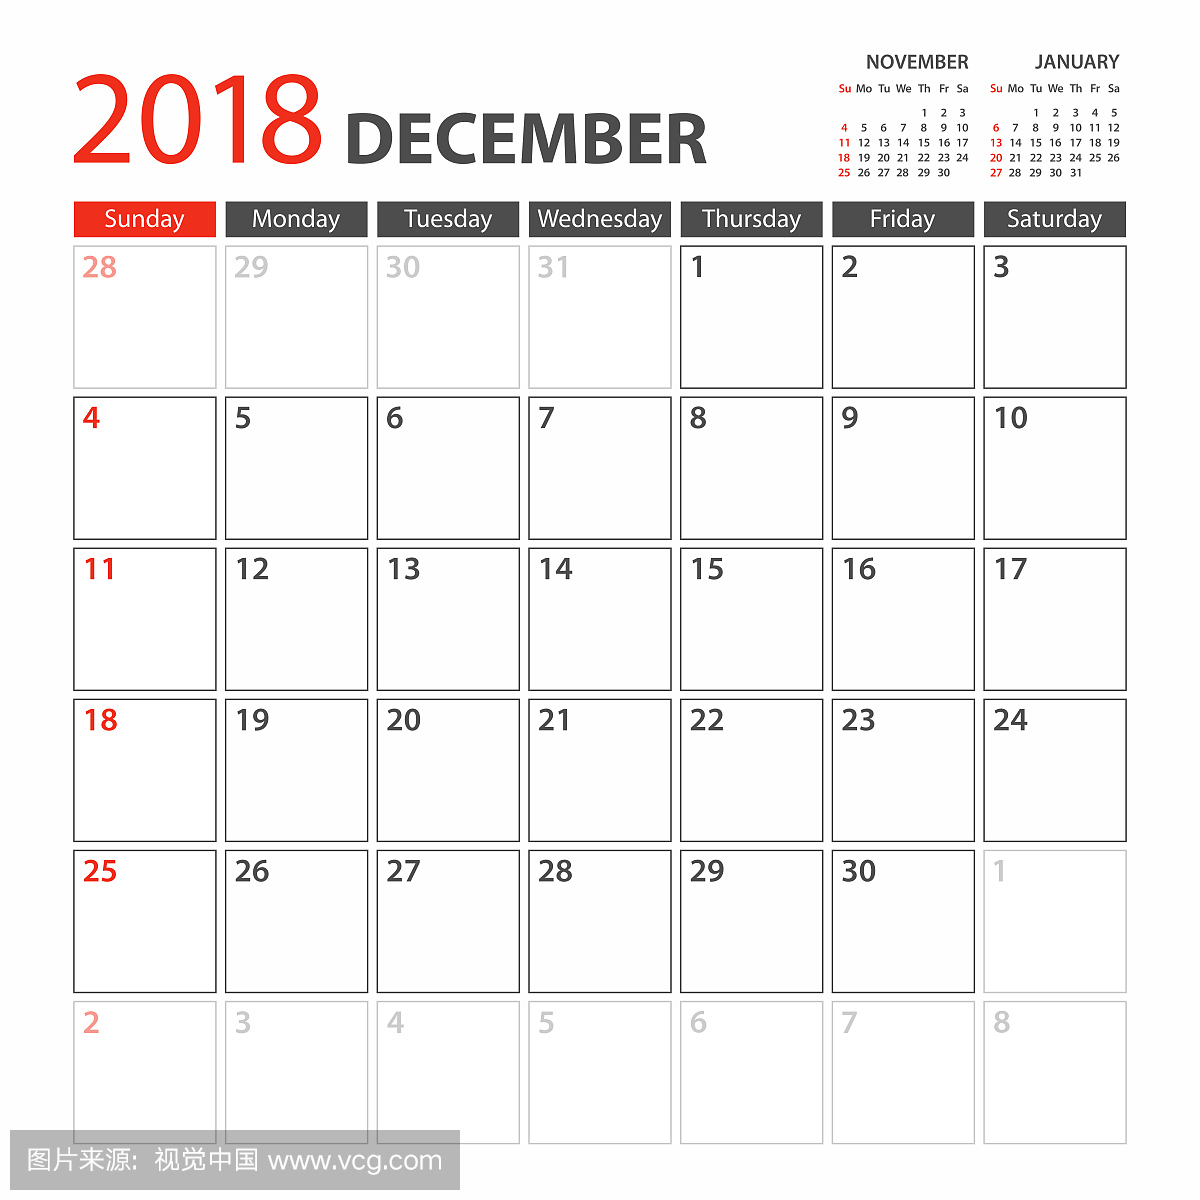 日历计划模板2018年12月。周从星期日开始